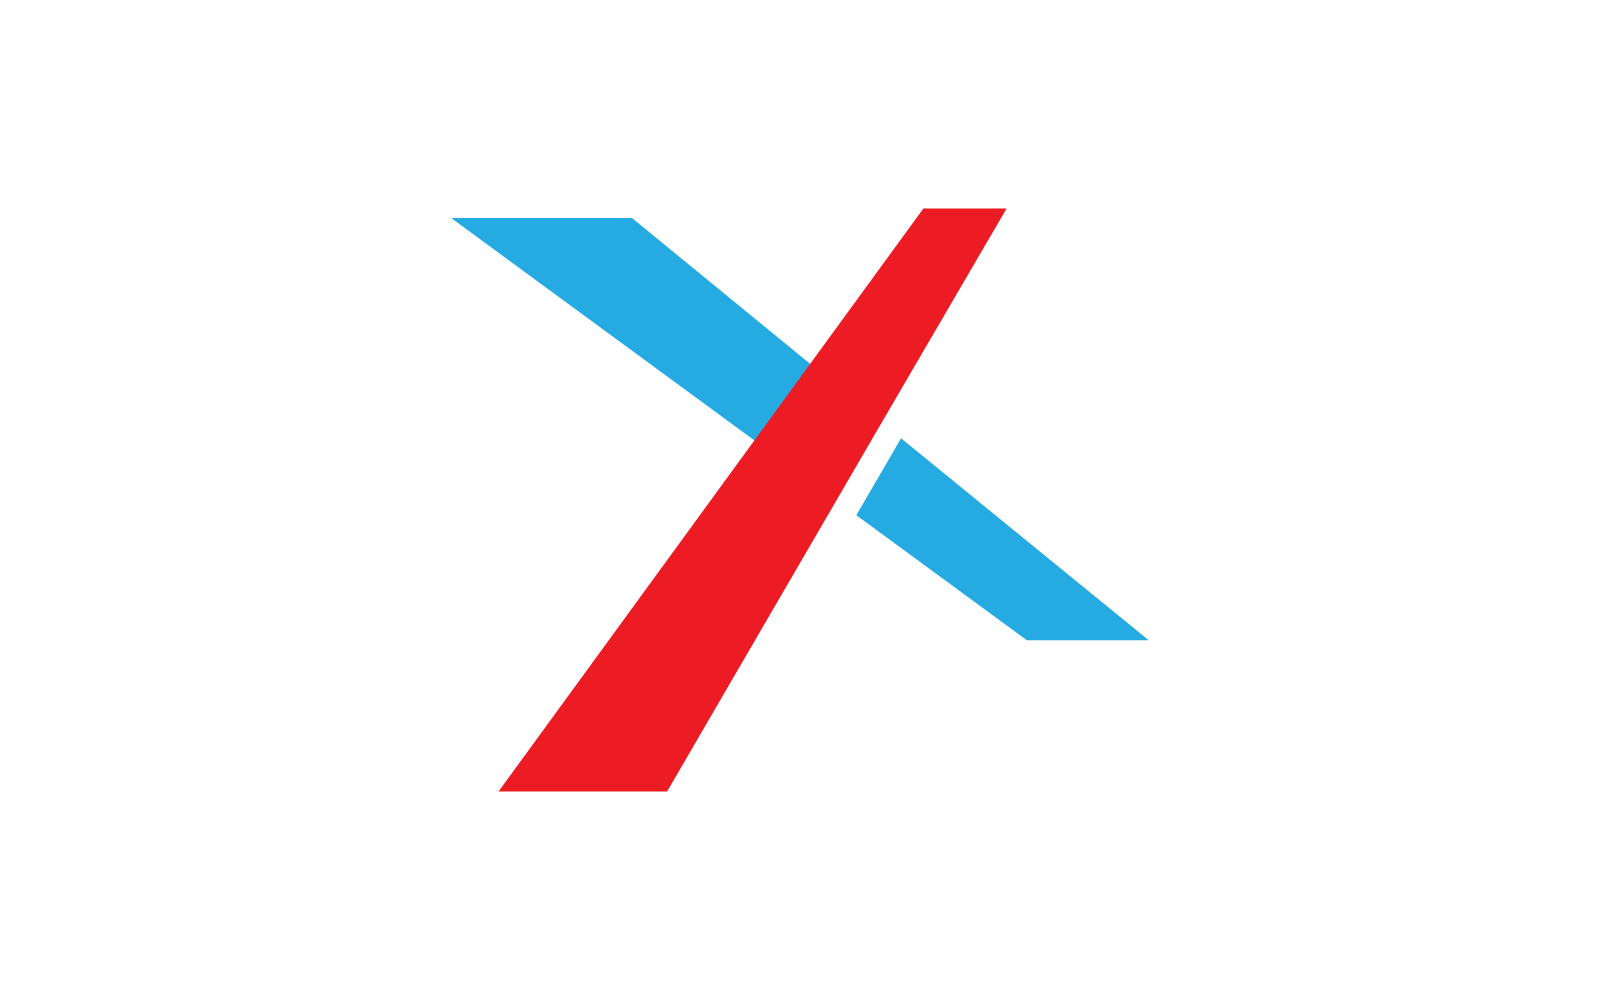 Diseño plano vectorial de plantilla de logotipo de letra X